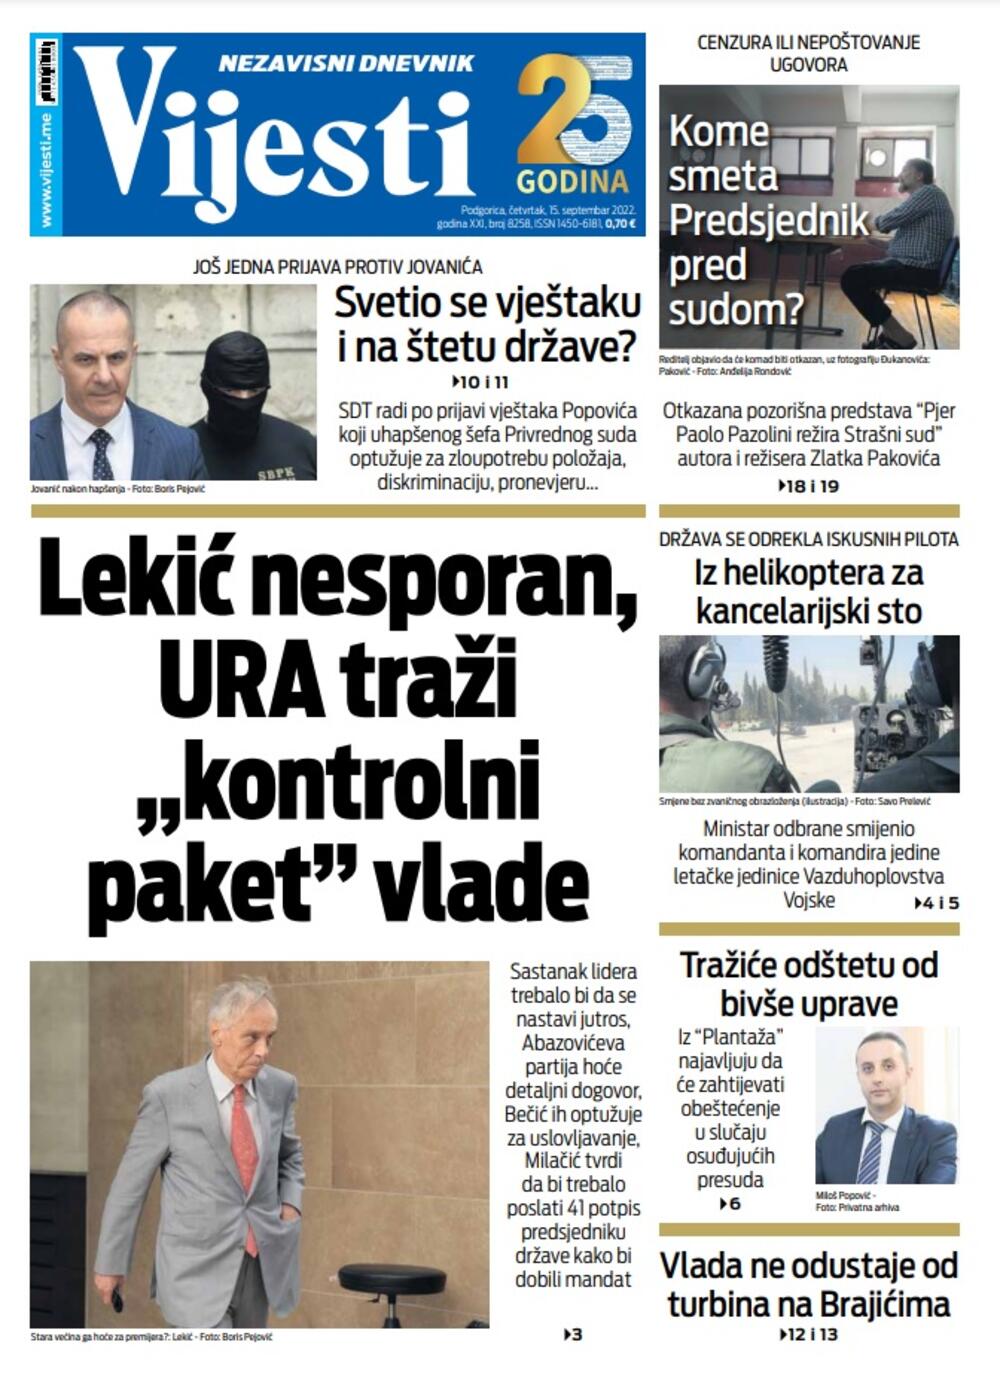 Naslovna strana "Vijesti" za 15. septembar 2022., Foto: Vijesti